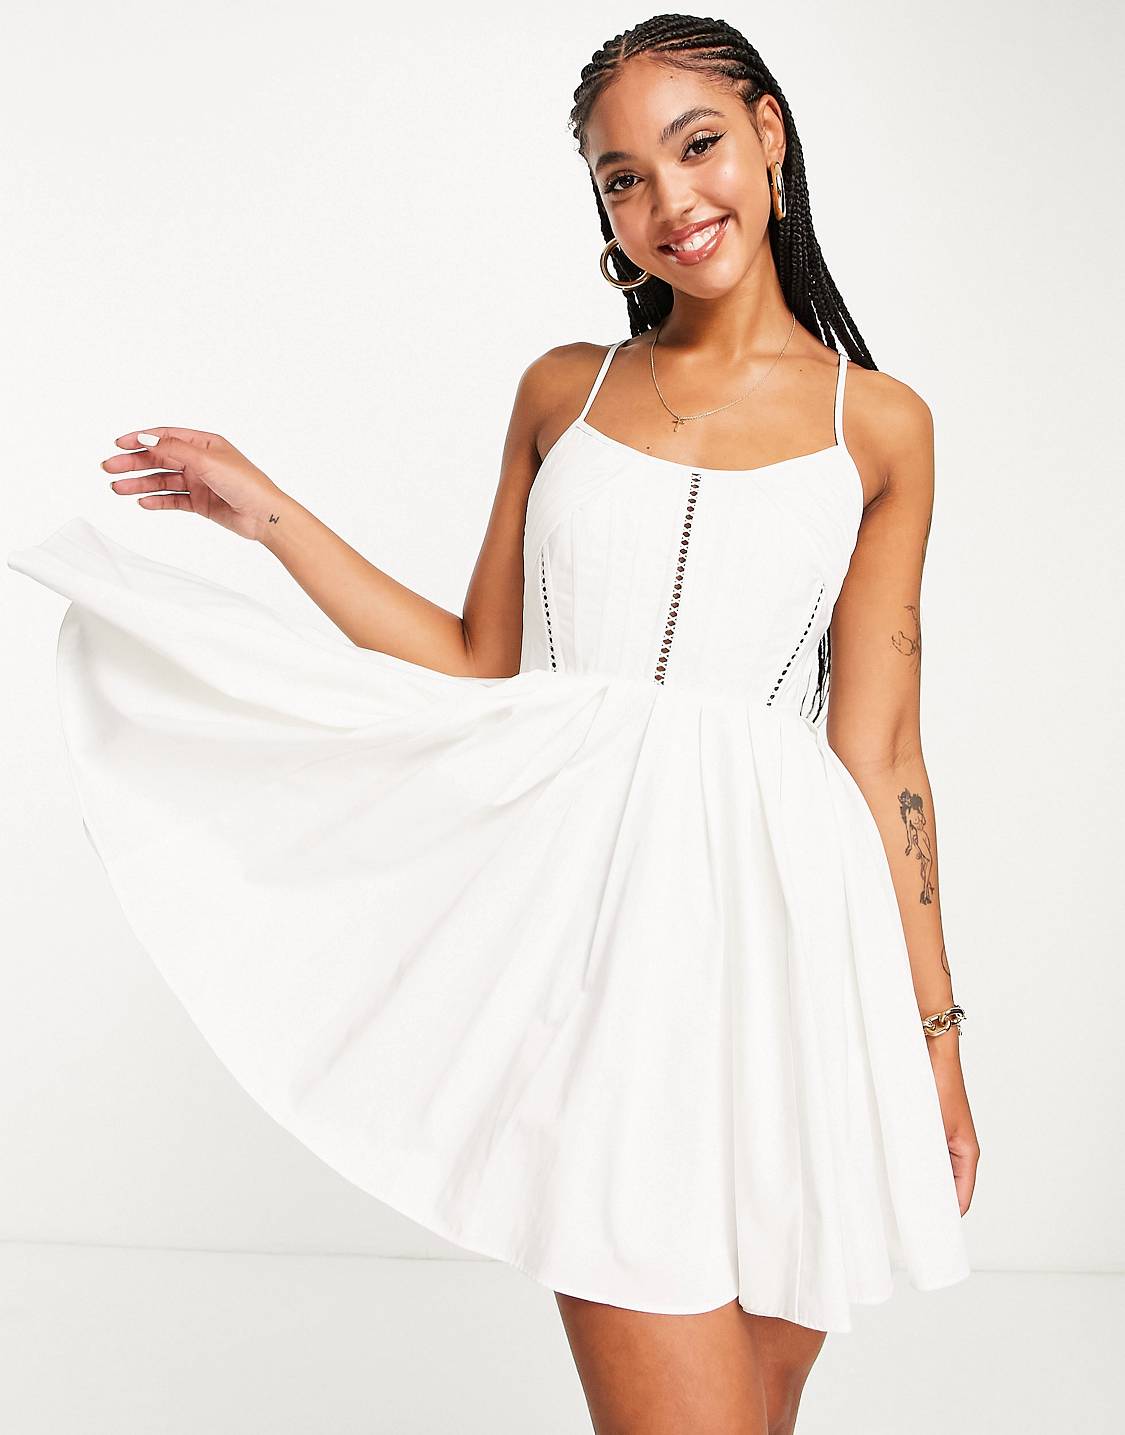 ASOS DESIGN – Robe corset courte et structurée de qualité supérieure avec laçage au dos – Blanc Robes de mariée courtes The Wedding Explorer